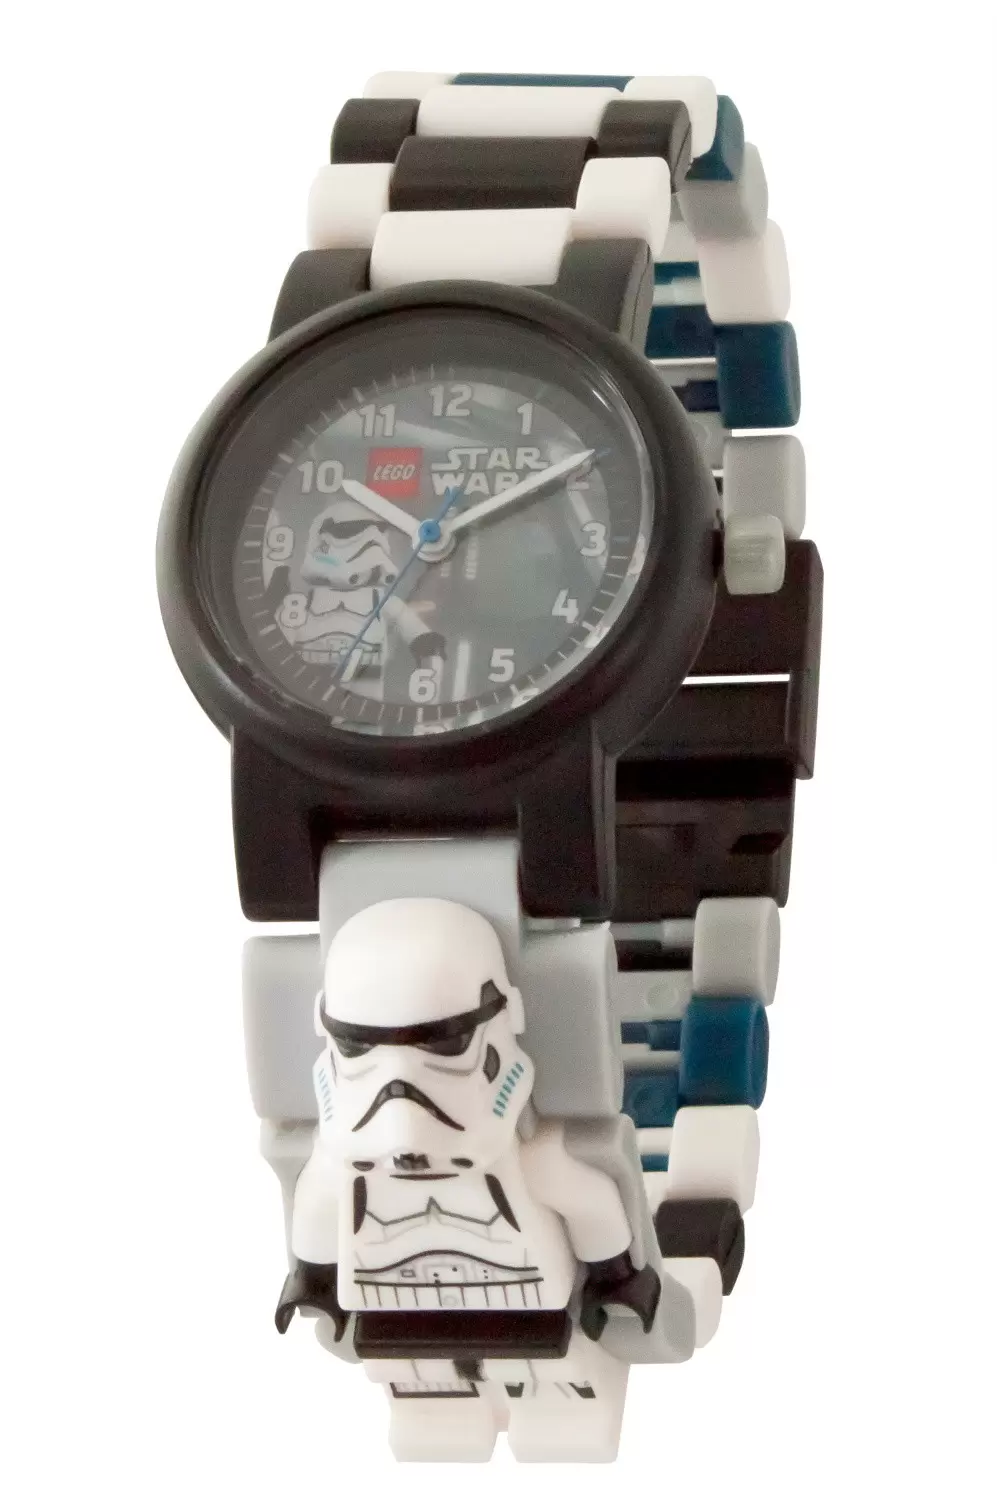 LEGO Watches - LEGO Star Wars Watch - Stormtrooper